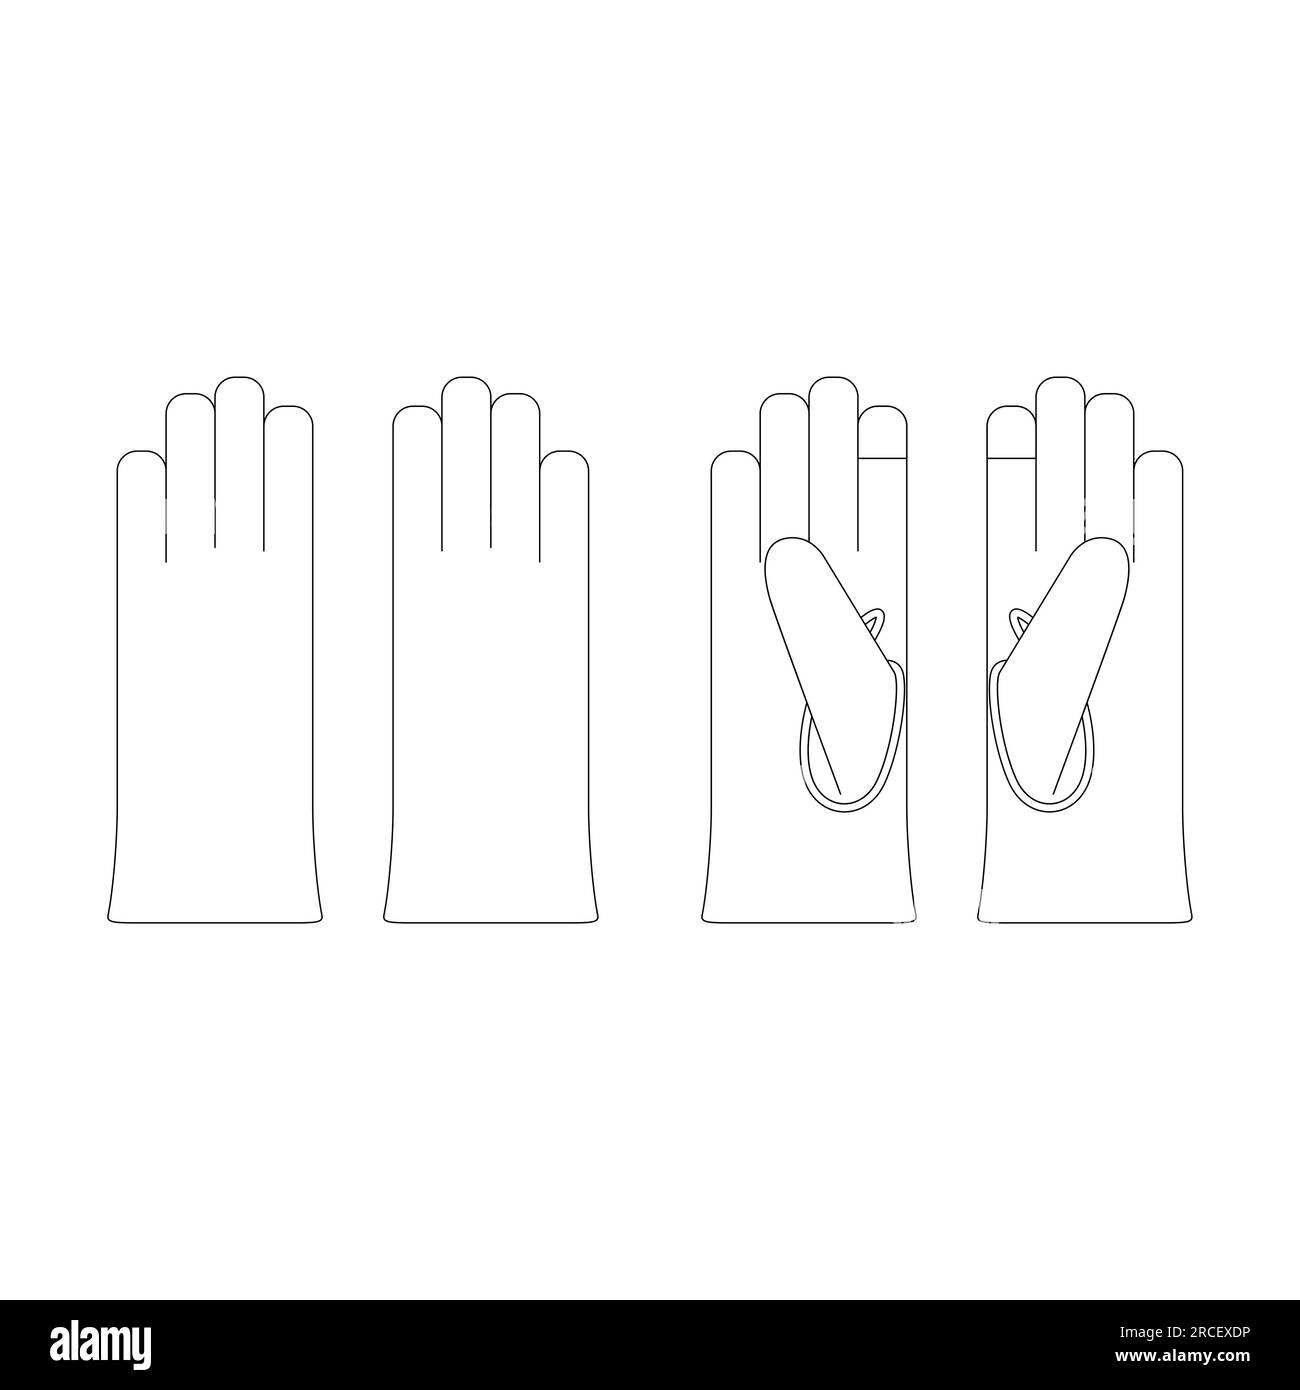 Modèle écran tactile gants en cuir illustration vectorielle esquisse plate conception aperçu évaluations Illustration de Vecteur